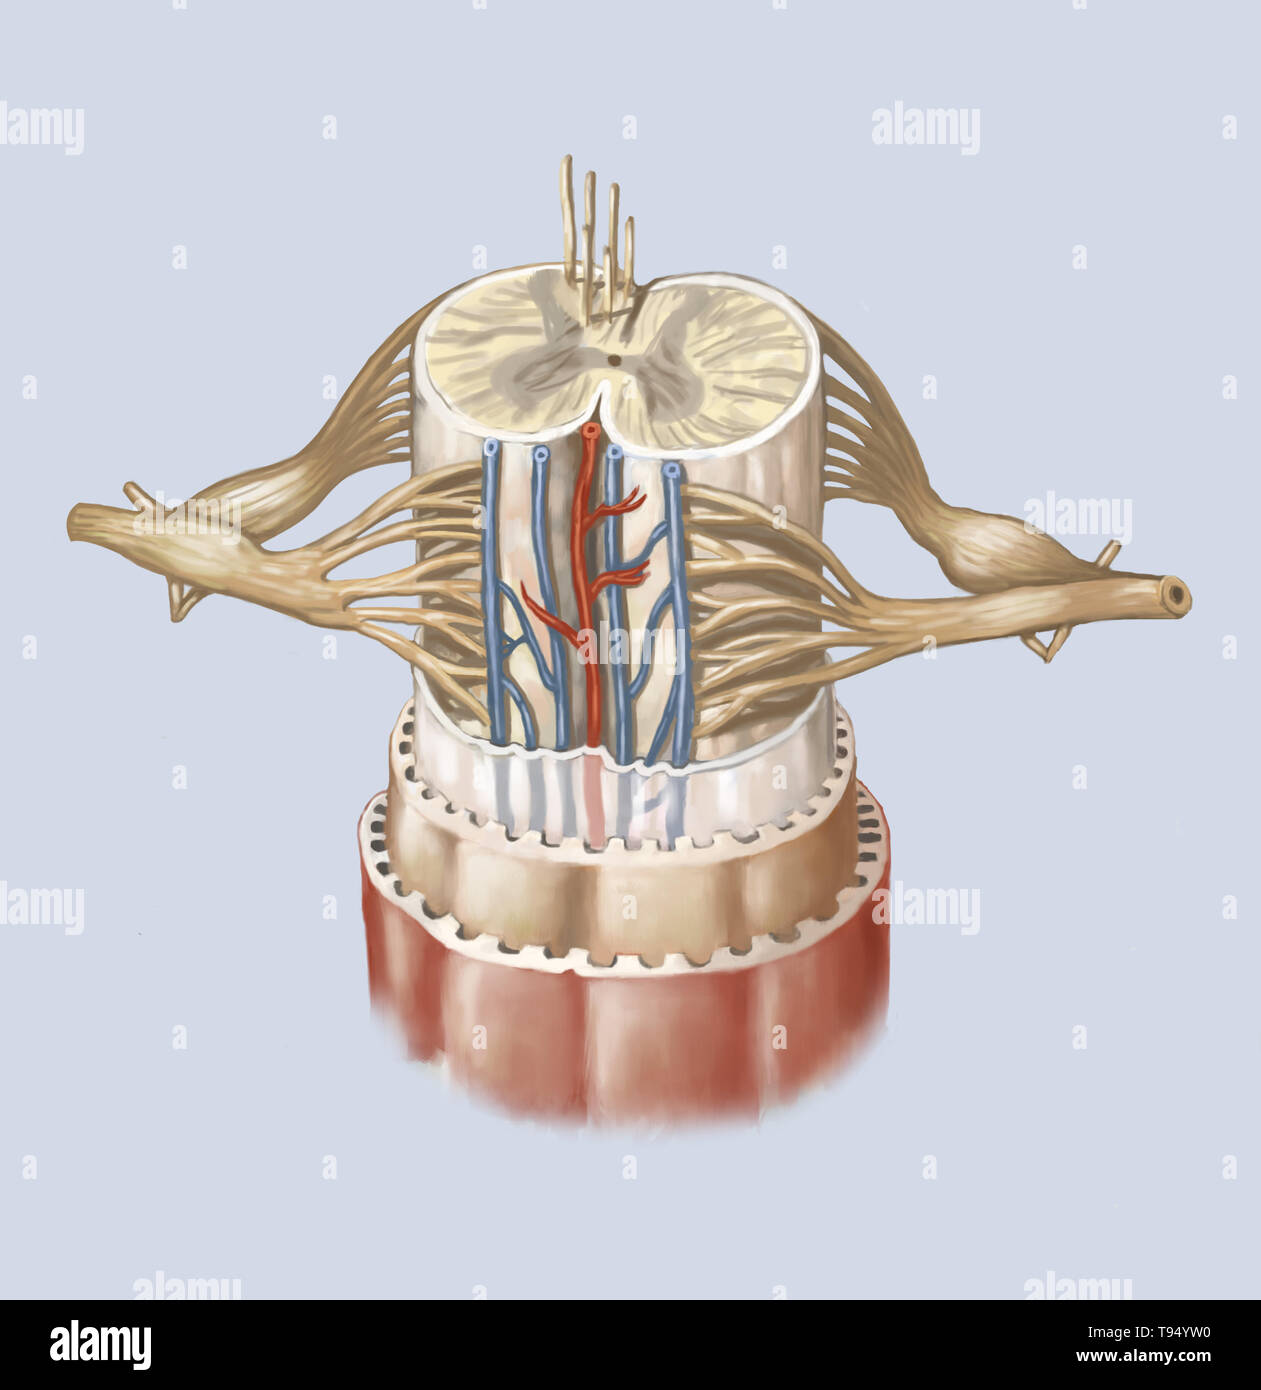 Il midollo spinale è formato da una corda di tessuto nervoso più di 16 pollici (40 cm) in lunghezza situato nel canale vertebrale, all'interno della colonna vertebrale. Esso spazia dal bulbo spinale alla seconda vertebra lombare ed è esteso da un insieme di fibre nervose, la cauda equina. Composto da motore e neuroni sensoriali, midollo spinale garantisce la trasmissione di messaggi tra i nervi spinali e il cervello, oltre ad essere un centro di riflesso. Foto Stock